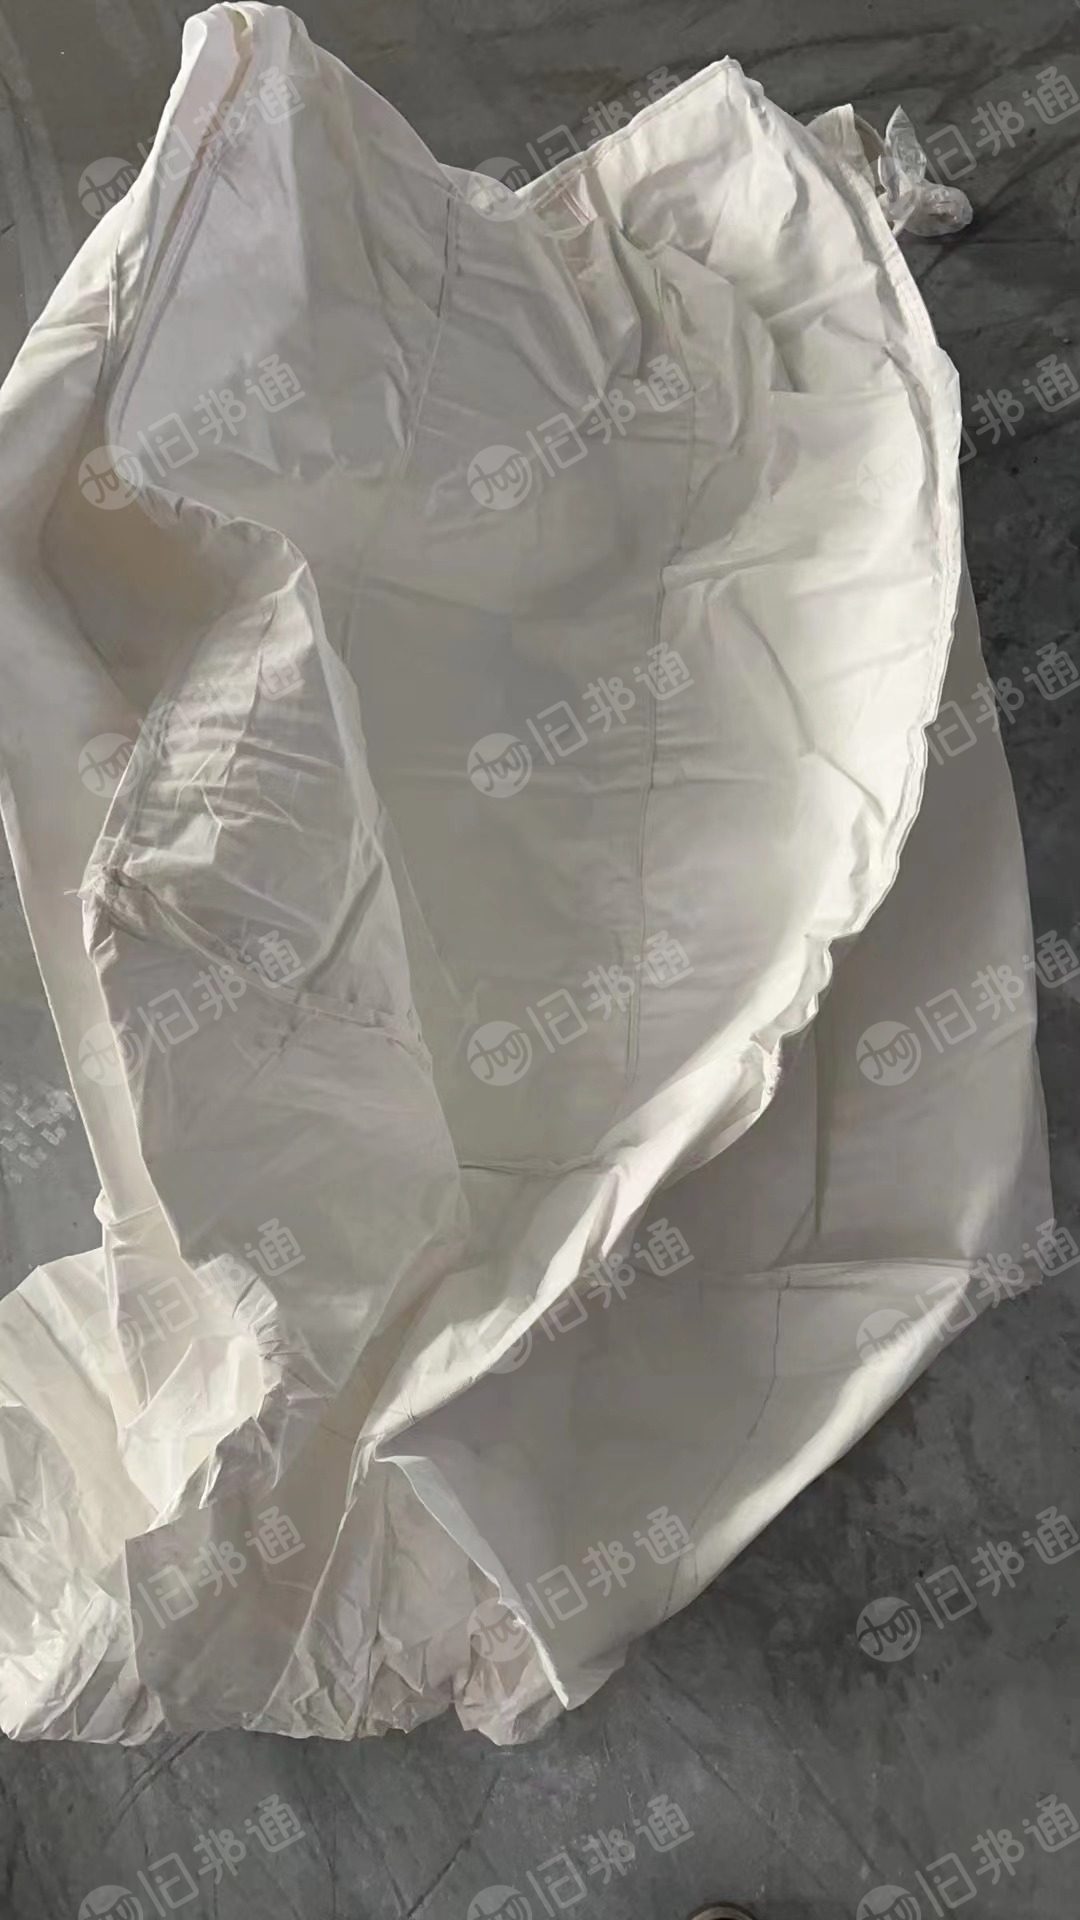 出售装钛白粉的原料袋，袋上有浮粉，口袋完好，可利用，1米X1米，高度1.5米